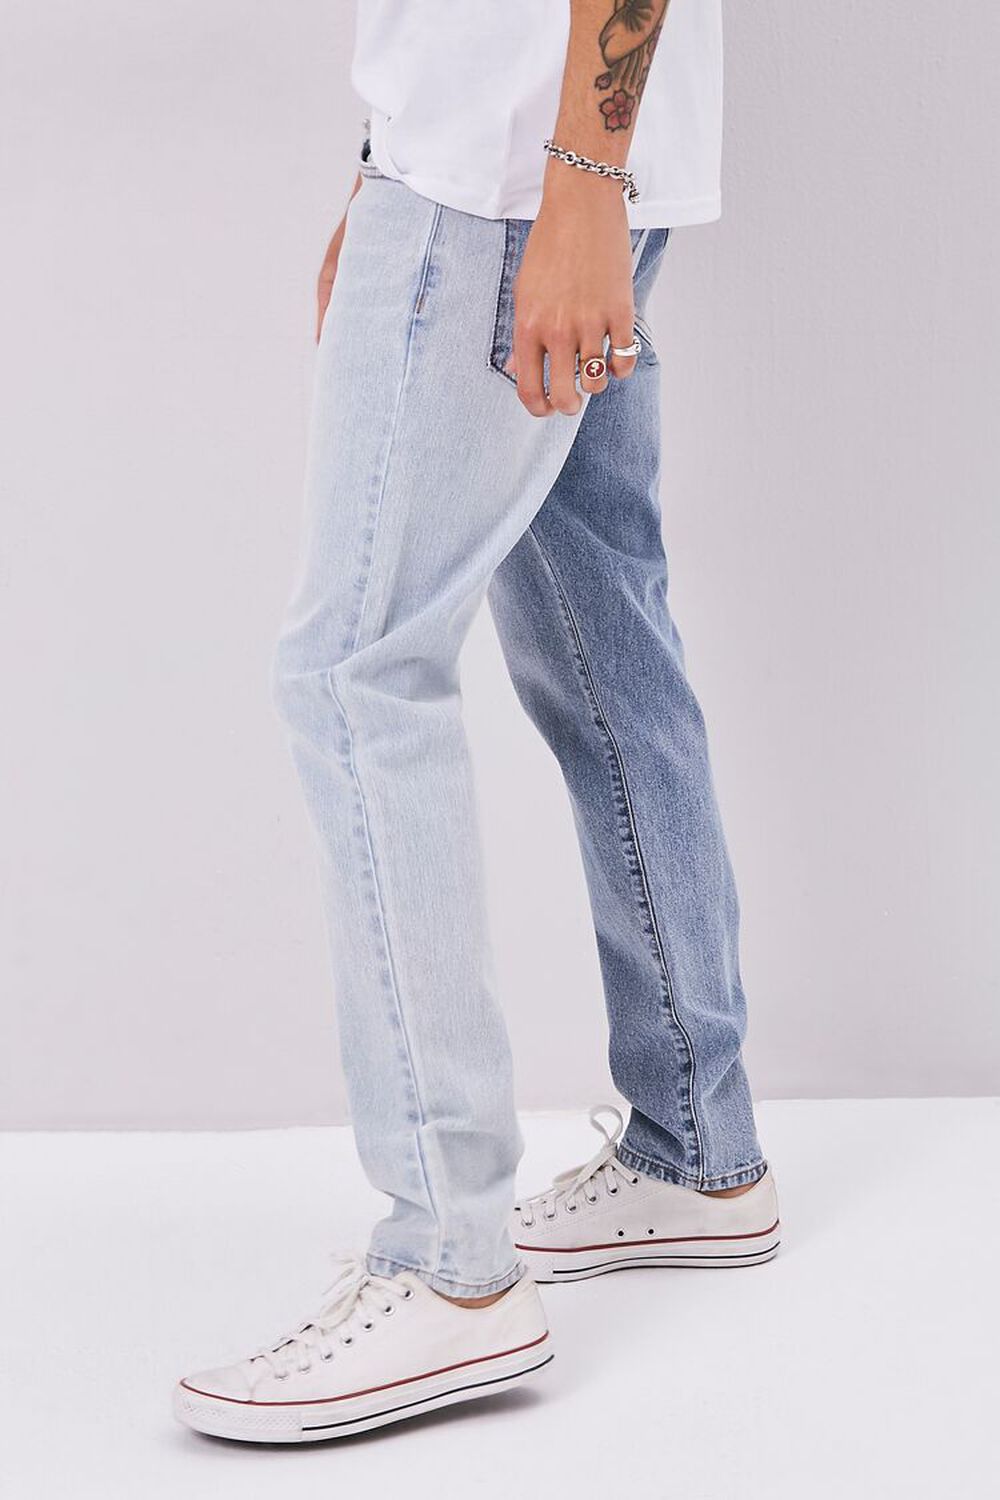 MEDIUM DENIM/DENIM Colorblock Slim-Fit Jeans, image 3